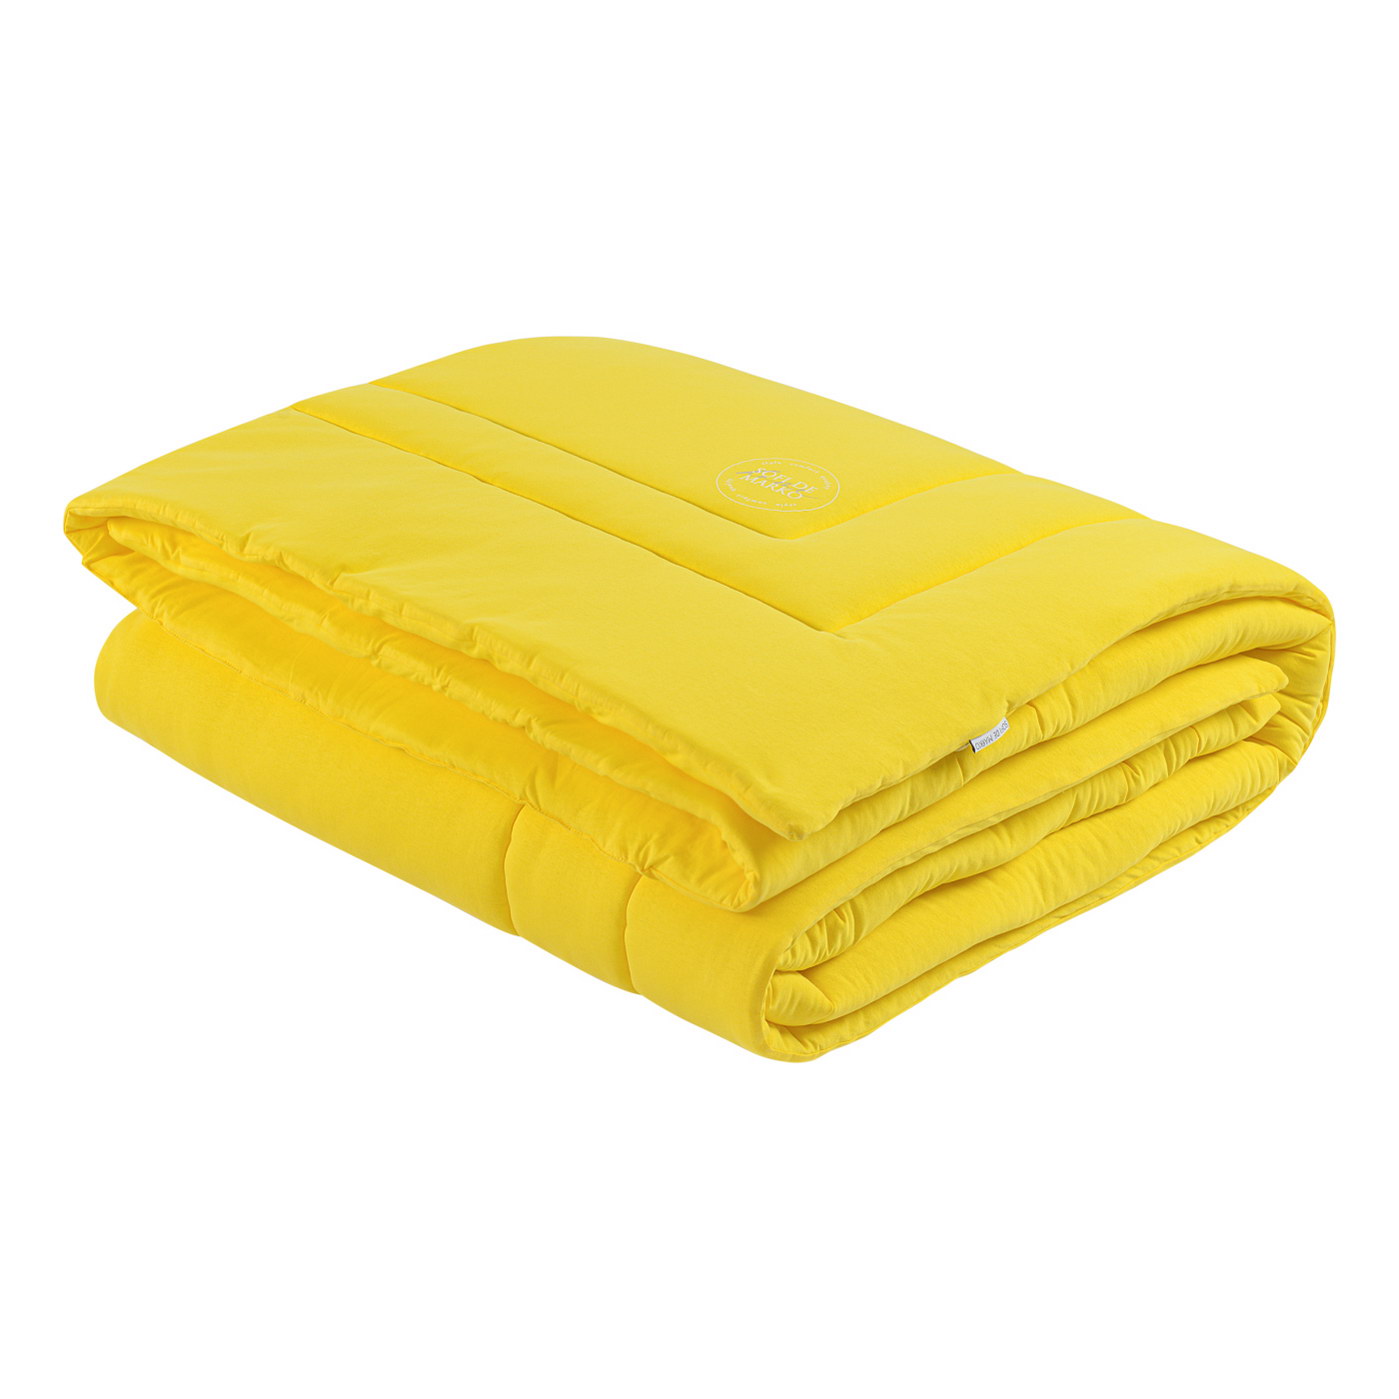 Трикотажное одеяло Роланд (желтое)